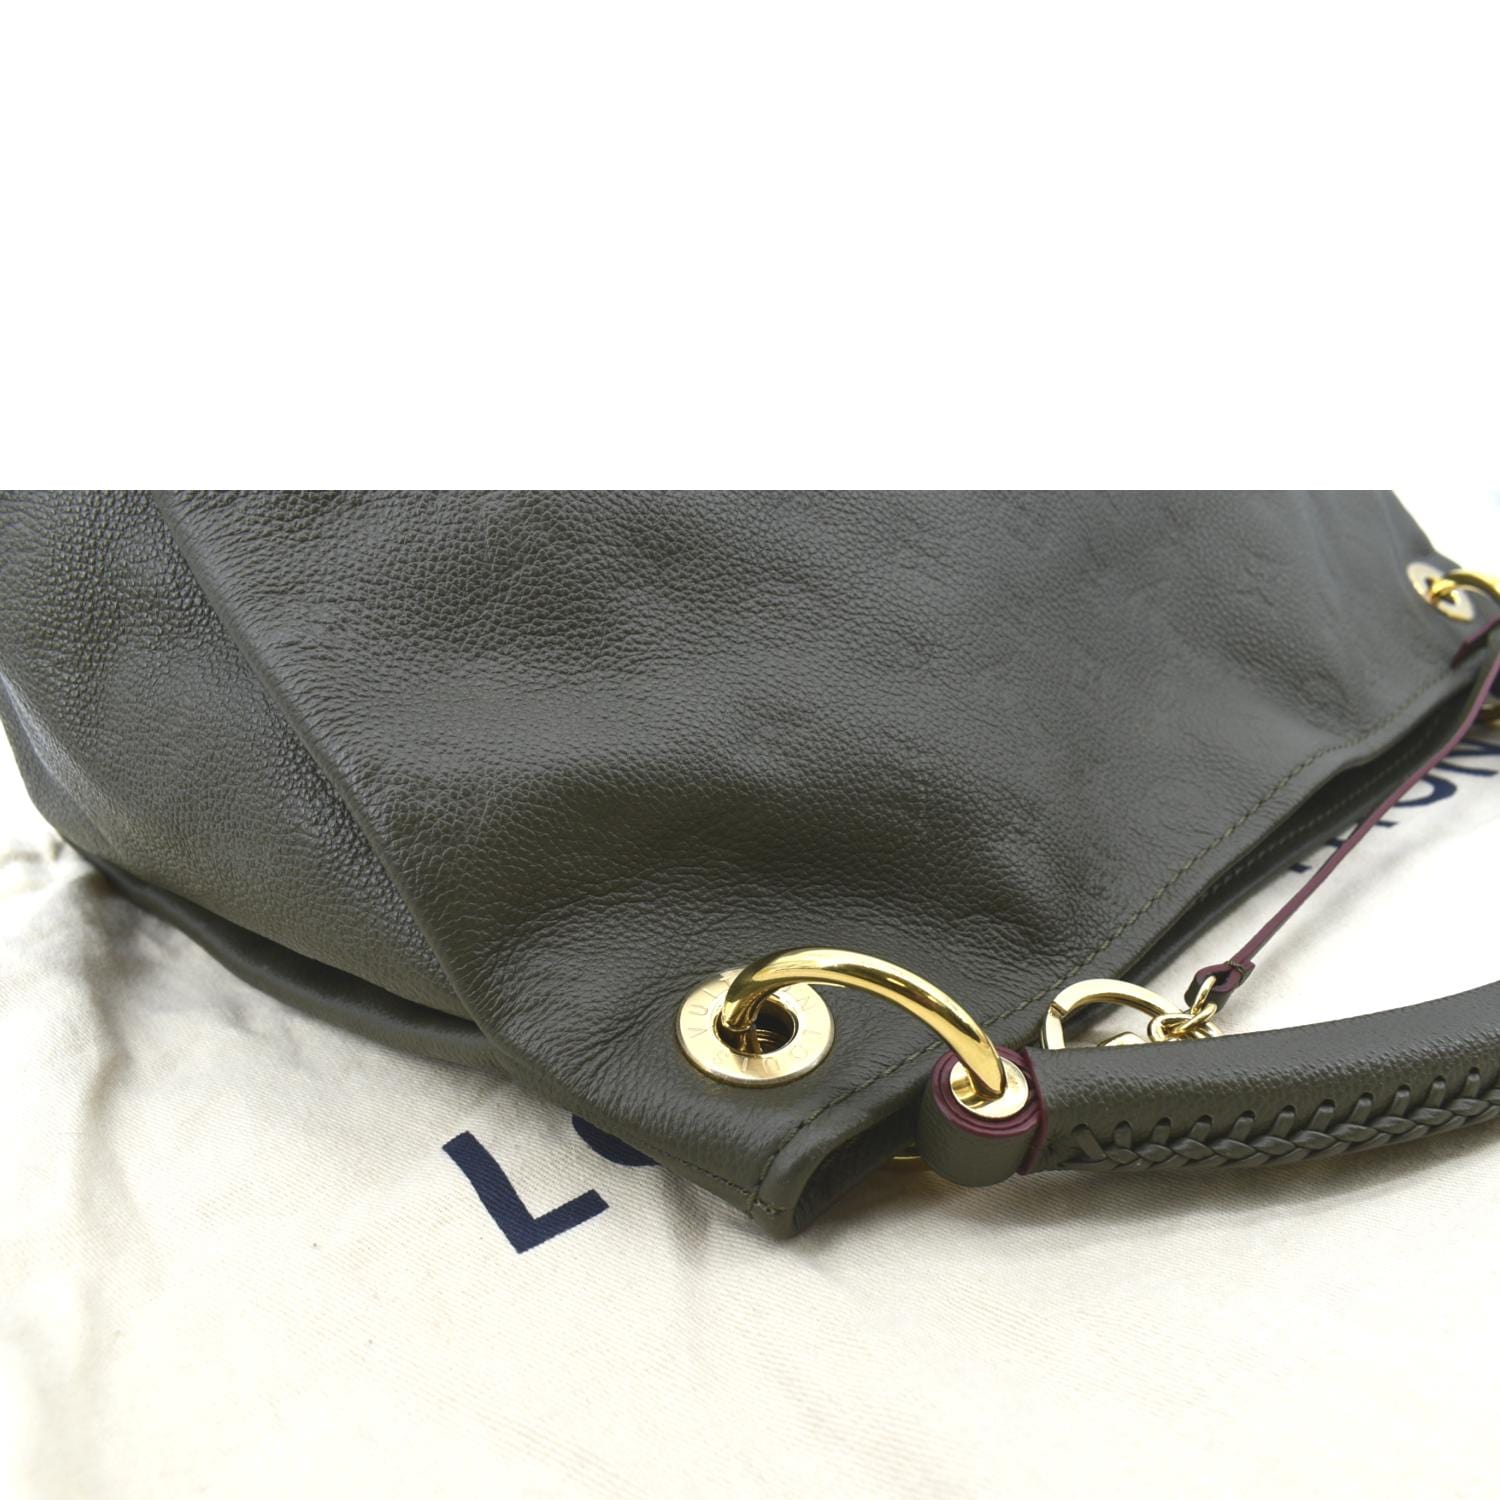 Louis Vuitton Artsy Handbag 395583